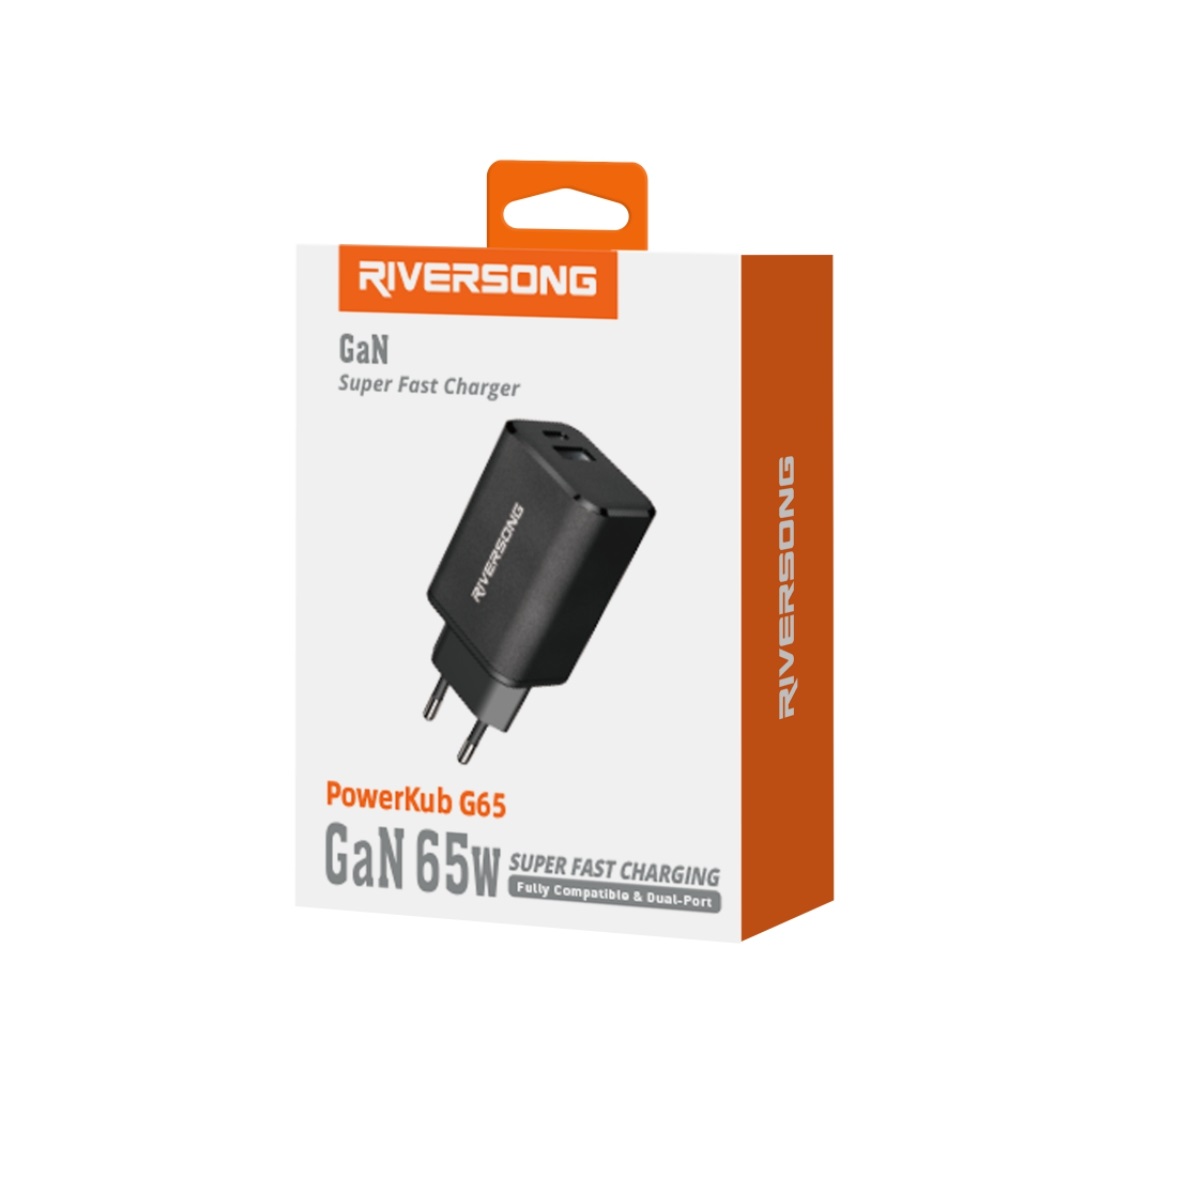 Riversong adowarka sieciowa PowerKub G65 65W 1x USB 1x USB-C czarna AD96-EU / 4